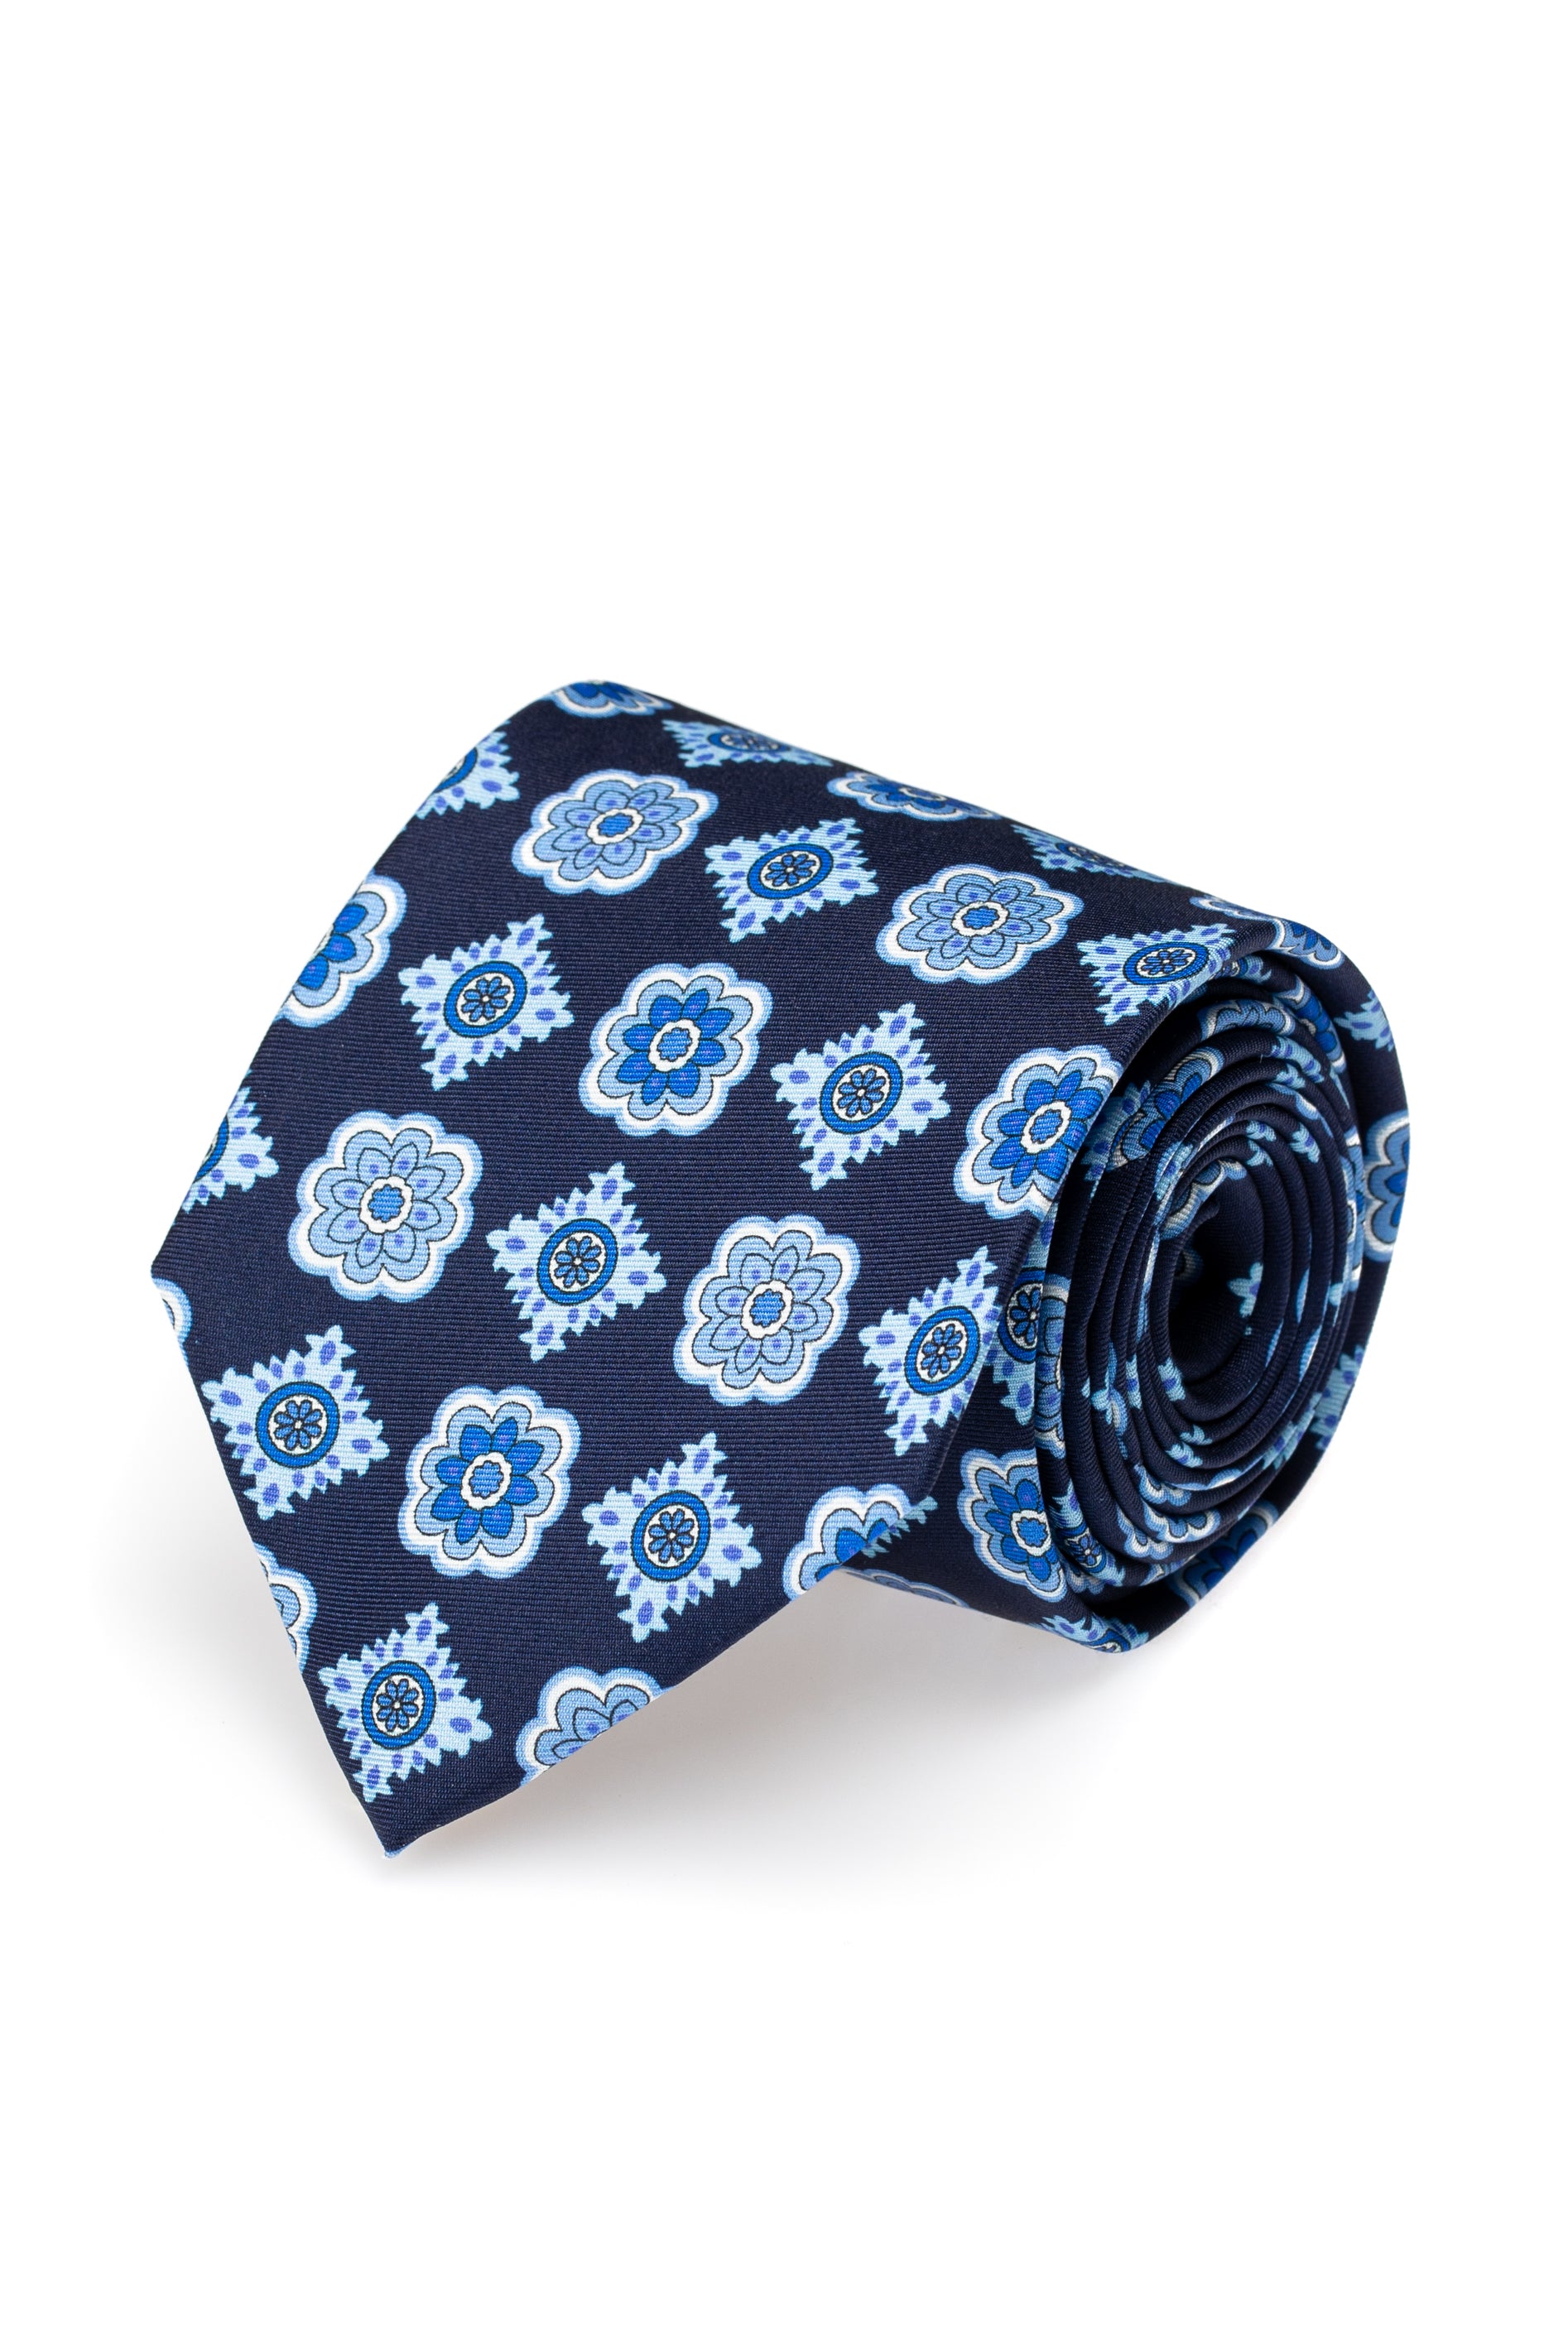 Navy silk tie with floral design